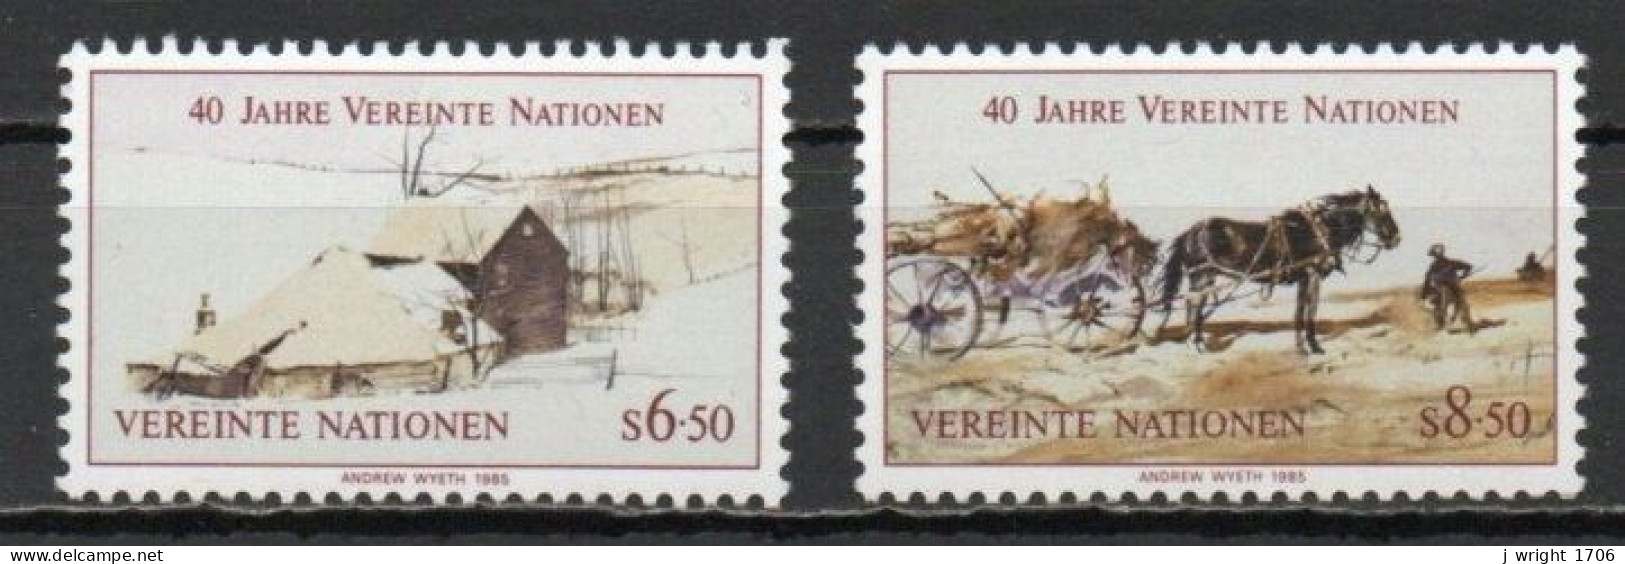 UN/Vienna, 1985, UN 40th Anniv, Set, MNH - Unused Stamps